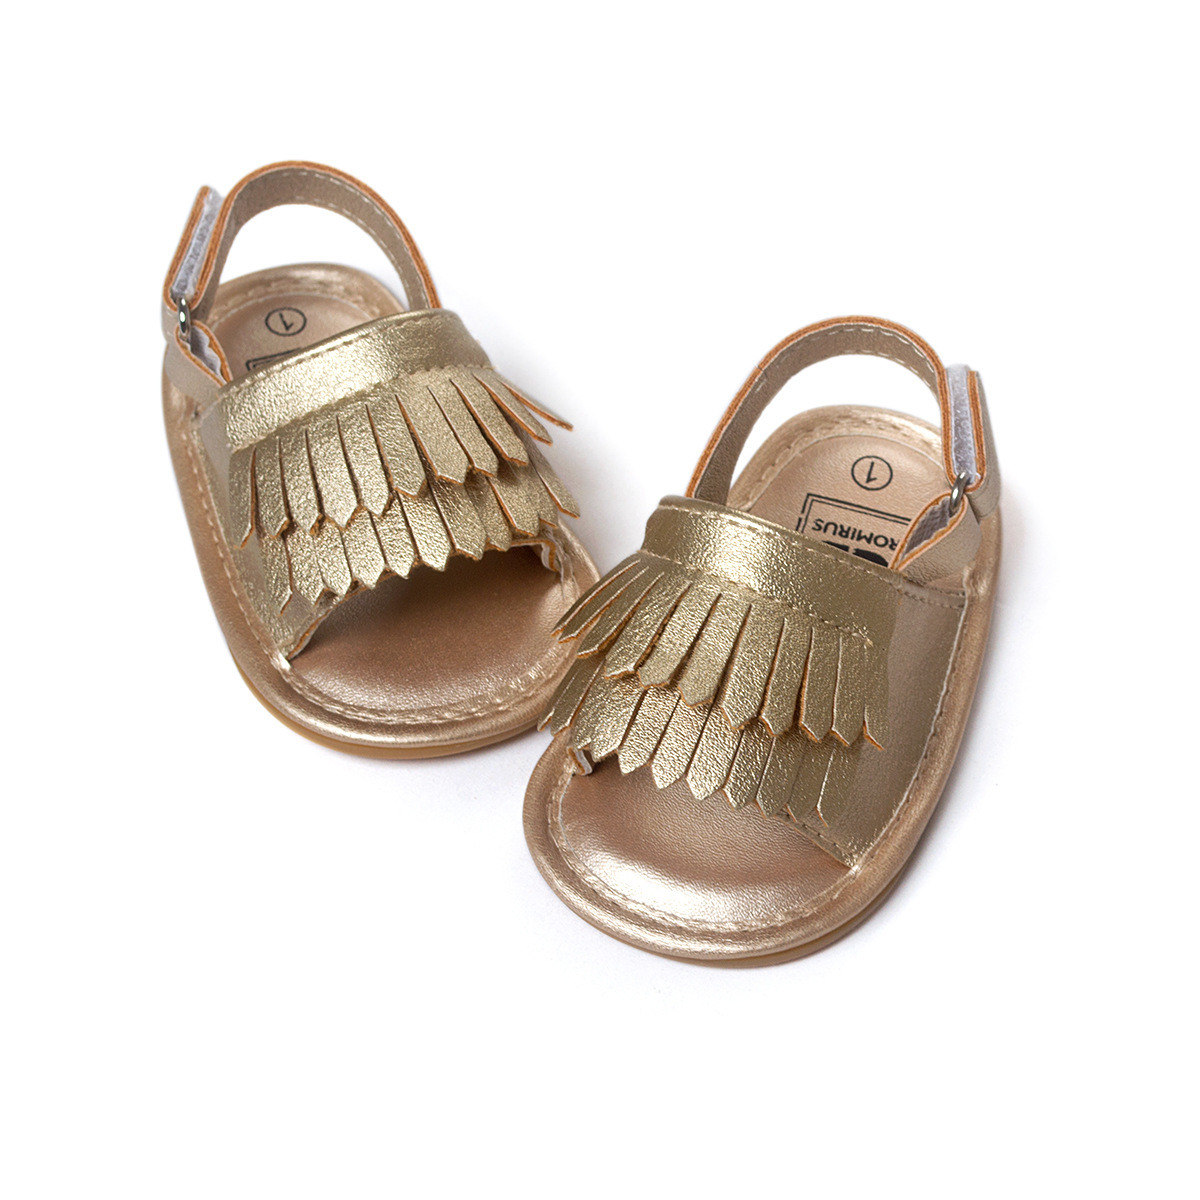 Unisex Baby Tassel Rubber Sole Non-Slip Summer Prewalker Sandals First Walkers